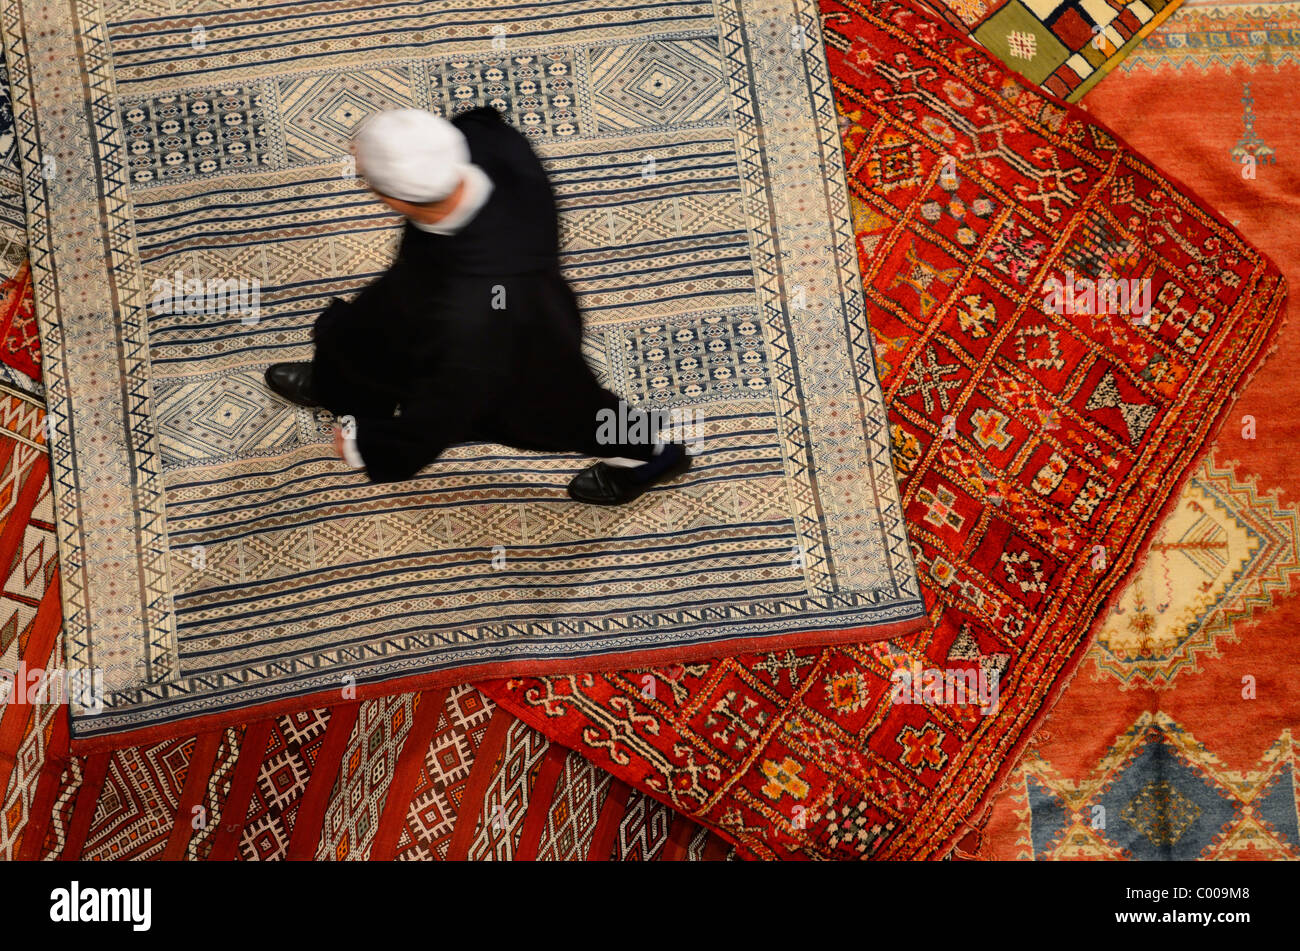 Riad Marocchino proprietario shopping per un nuovo tappeto persiano in Fes el Bali medina marocco Foto Stock